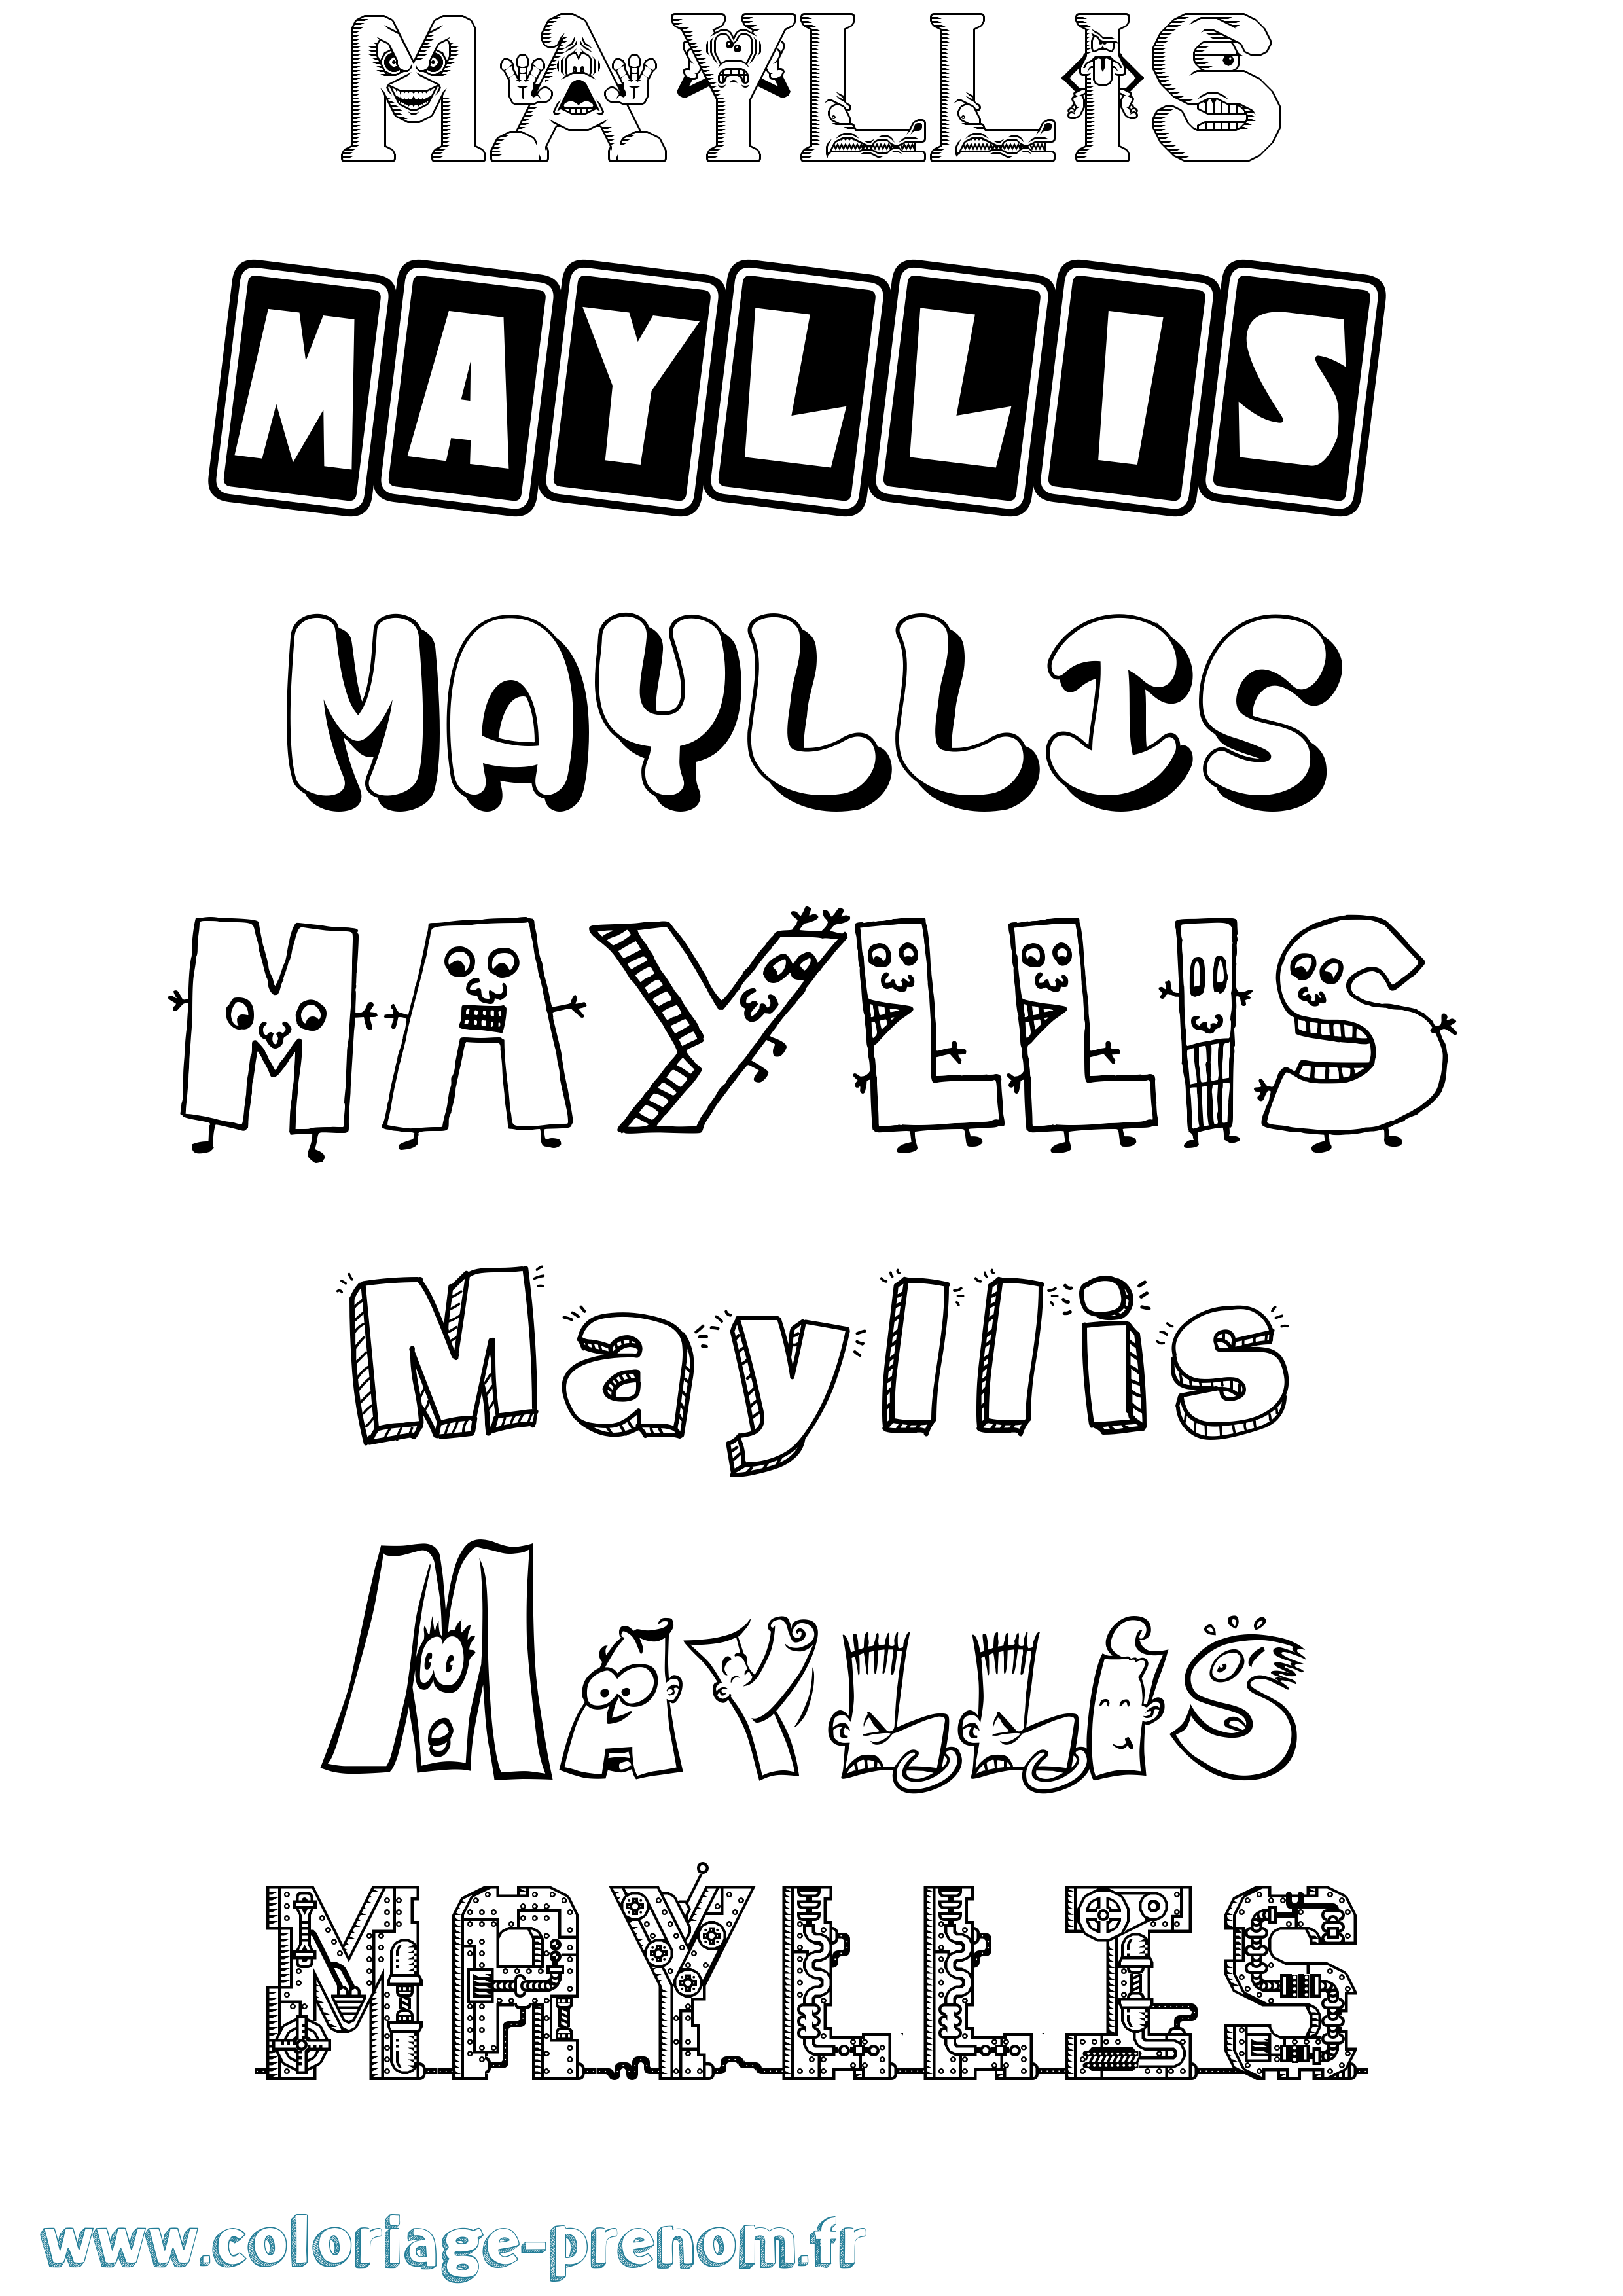 Coloriage prénom Mayllis Fun